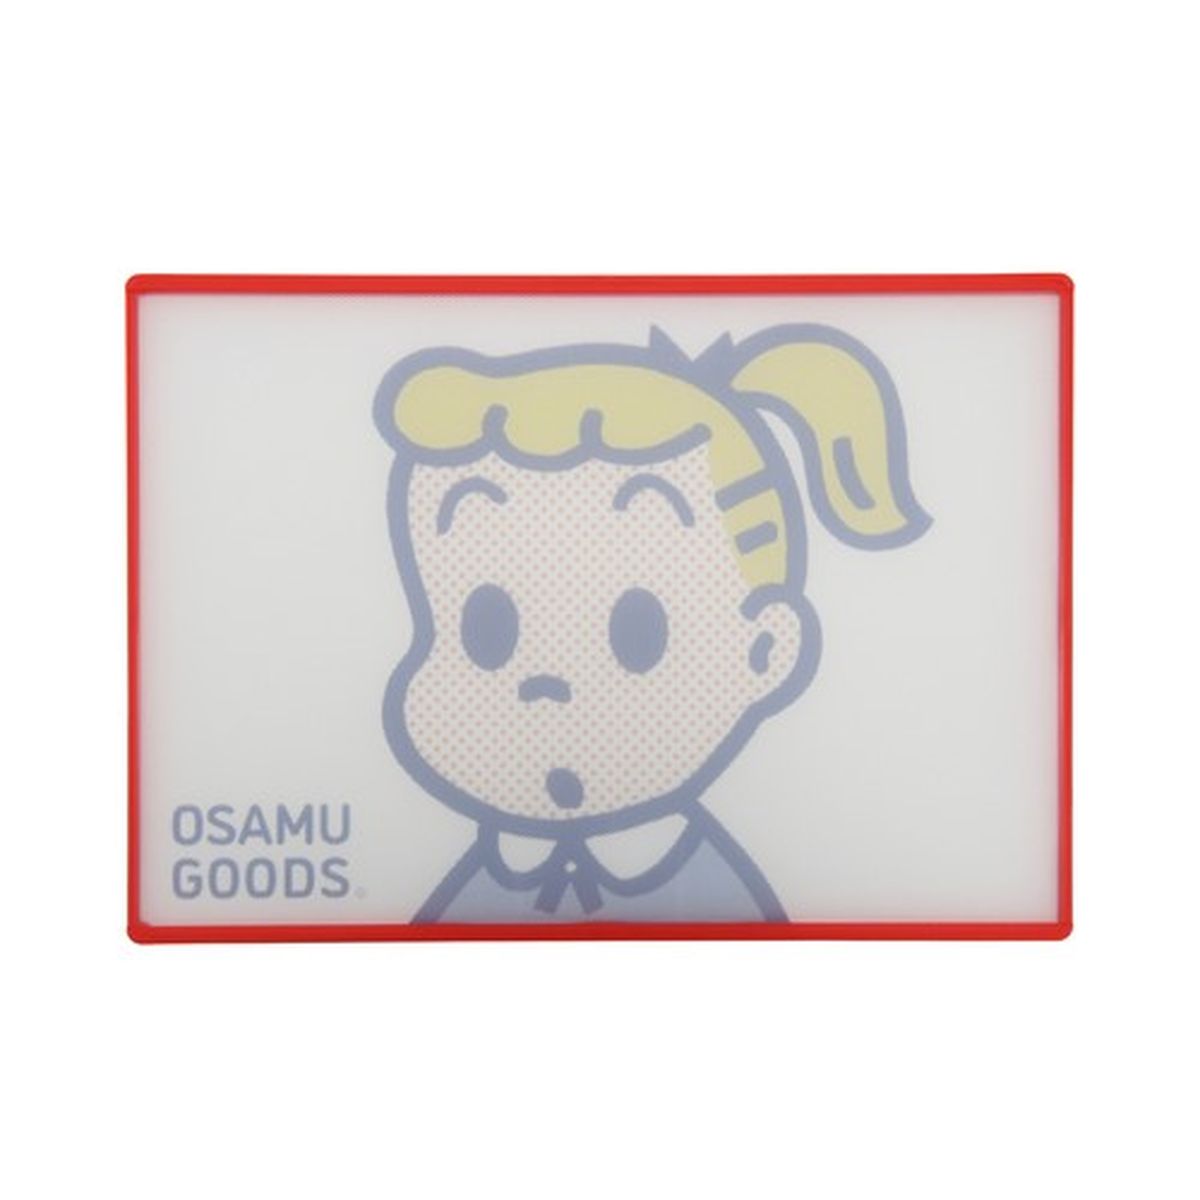 リバーシブルまな板 (OSAMU GOODS)